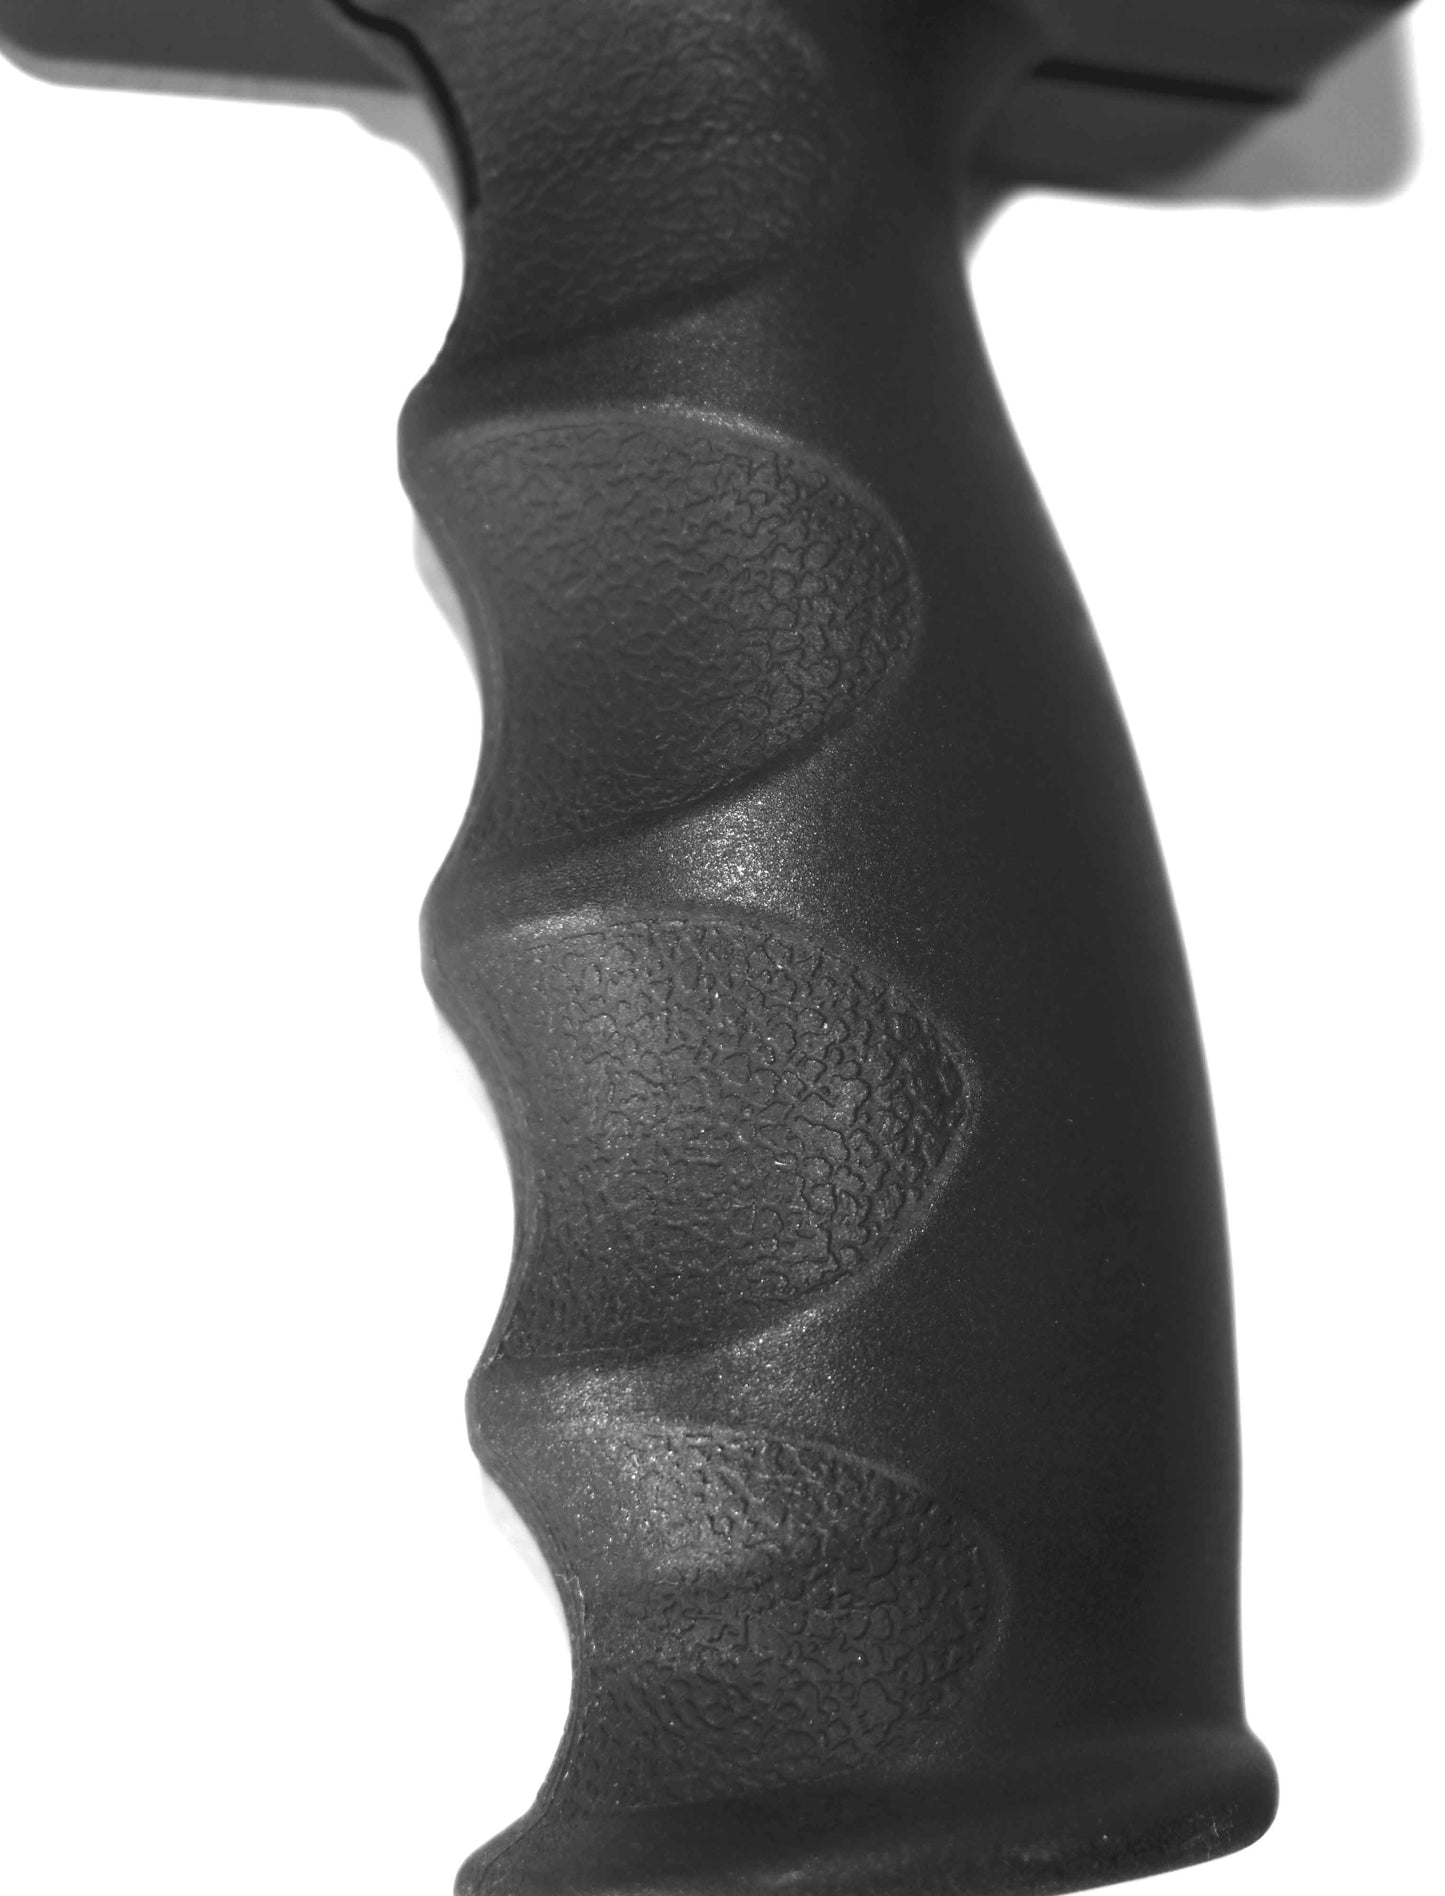 Tactical grip black for Tippmann Stormer Paintball Gun.